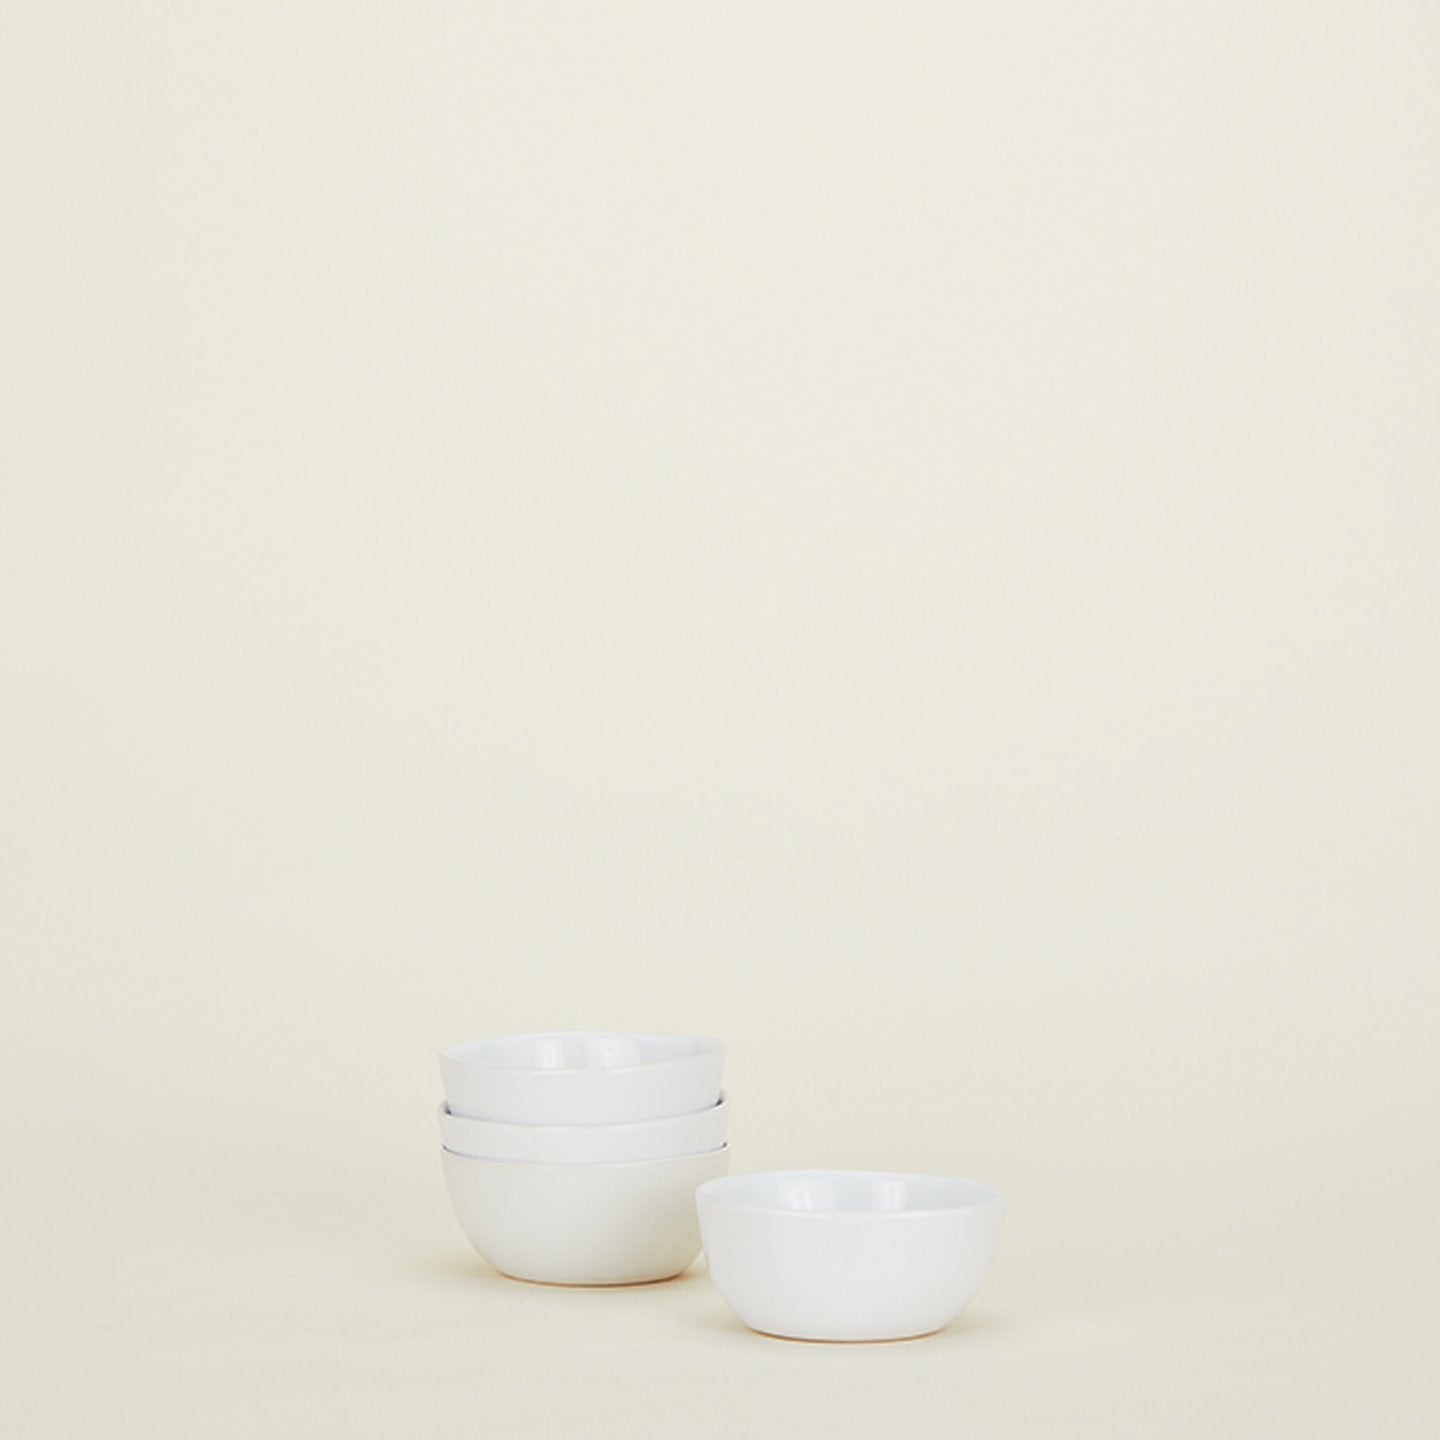 Organic Bowl - White